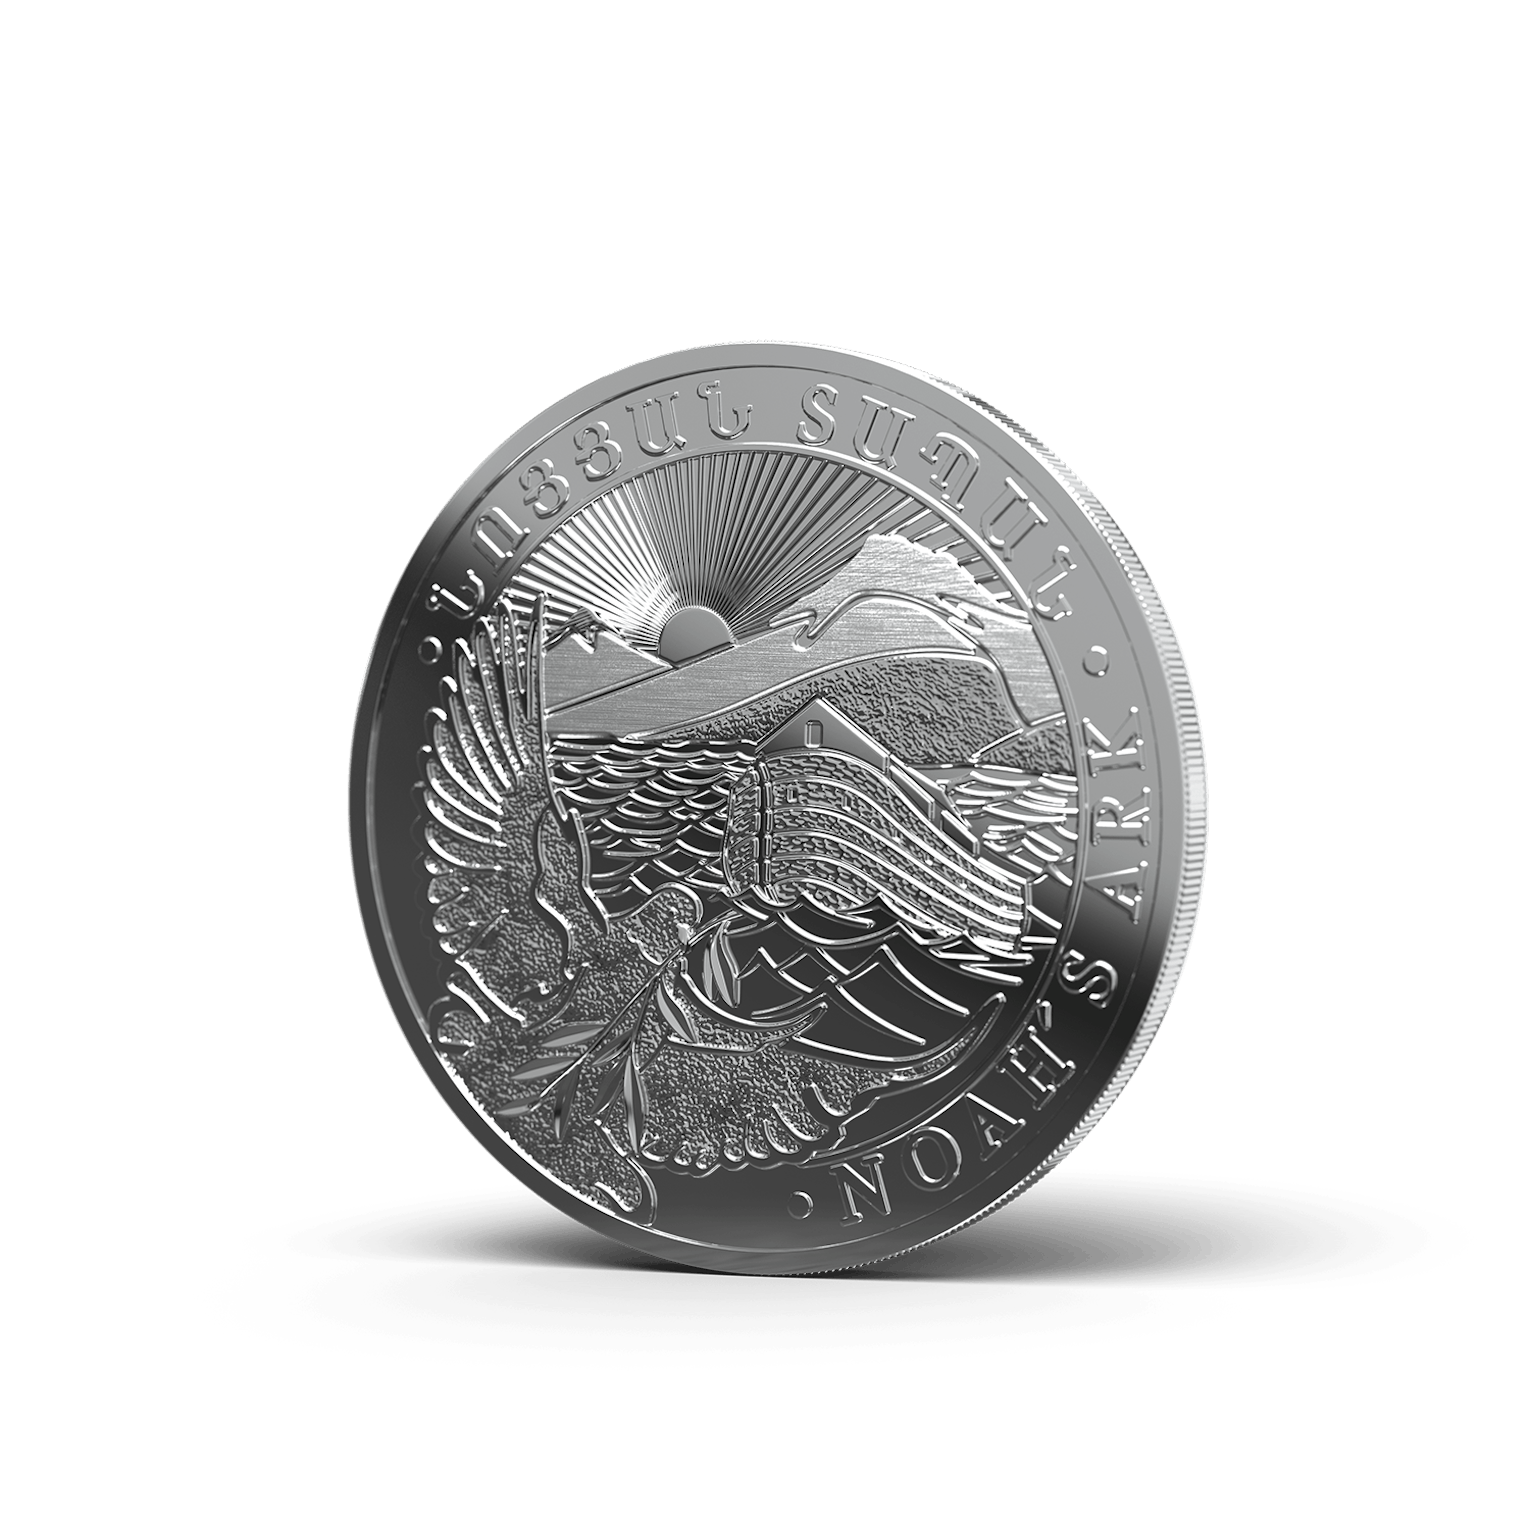 Silbermünzen als Wertanlage